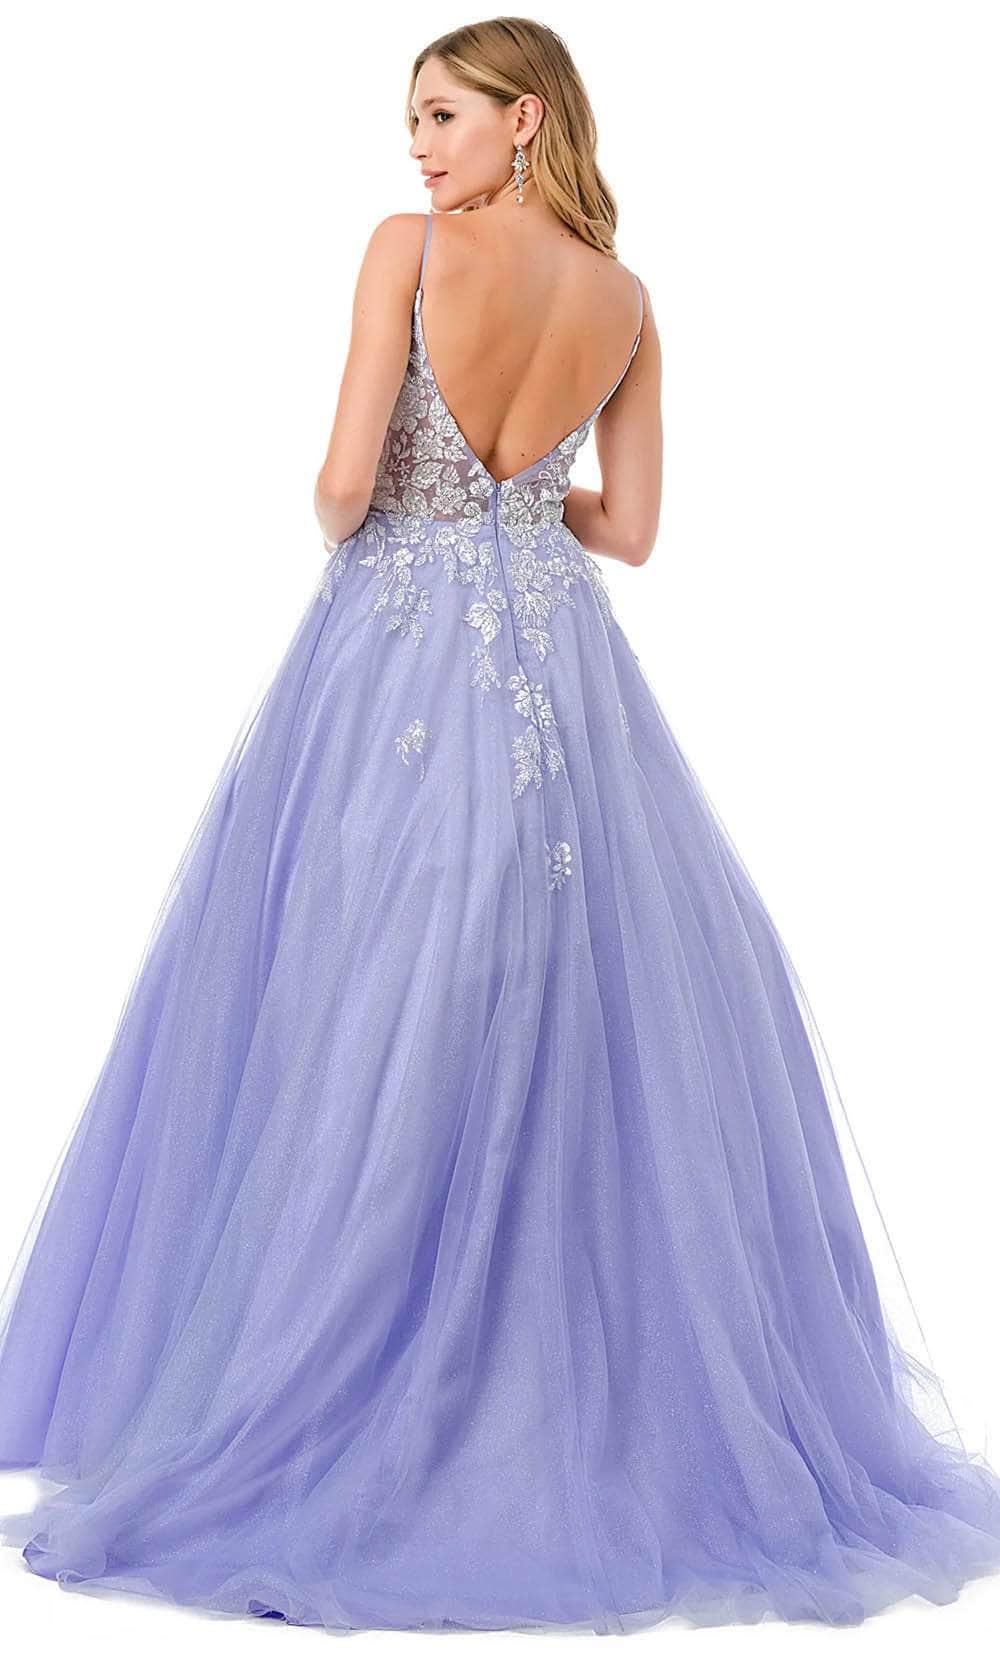 Aspeed Design L2791B - Sweetheart Prom Dress